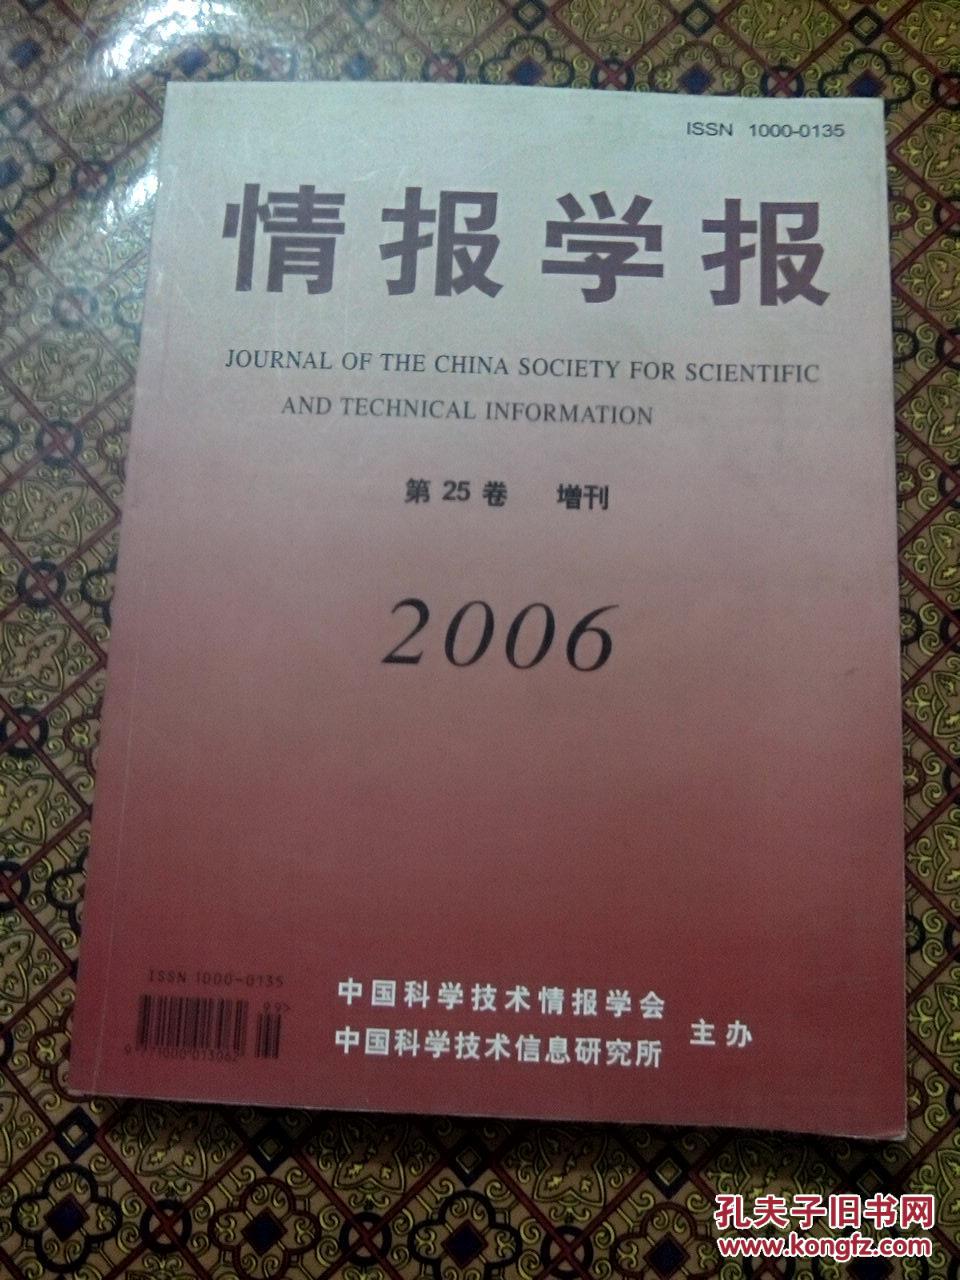 【图】情报学报 第25卷 增刊 2006_价格:36.00